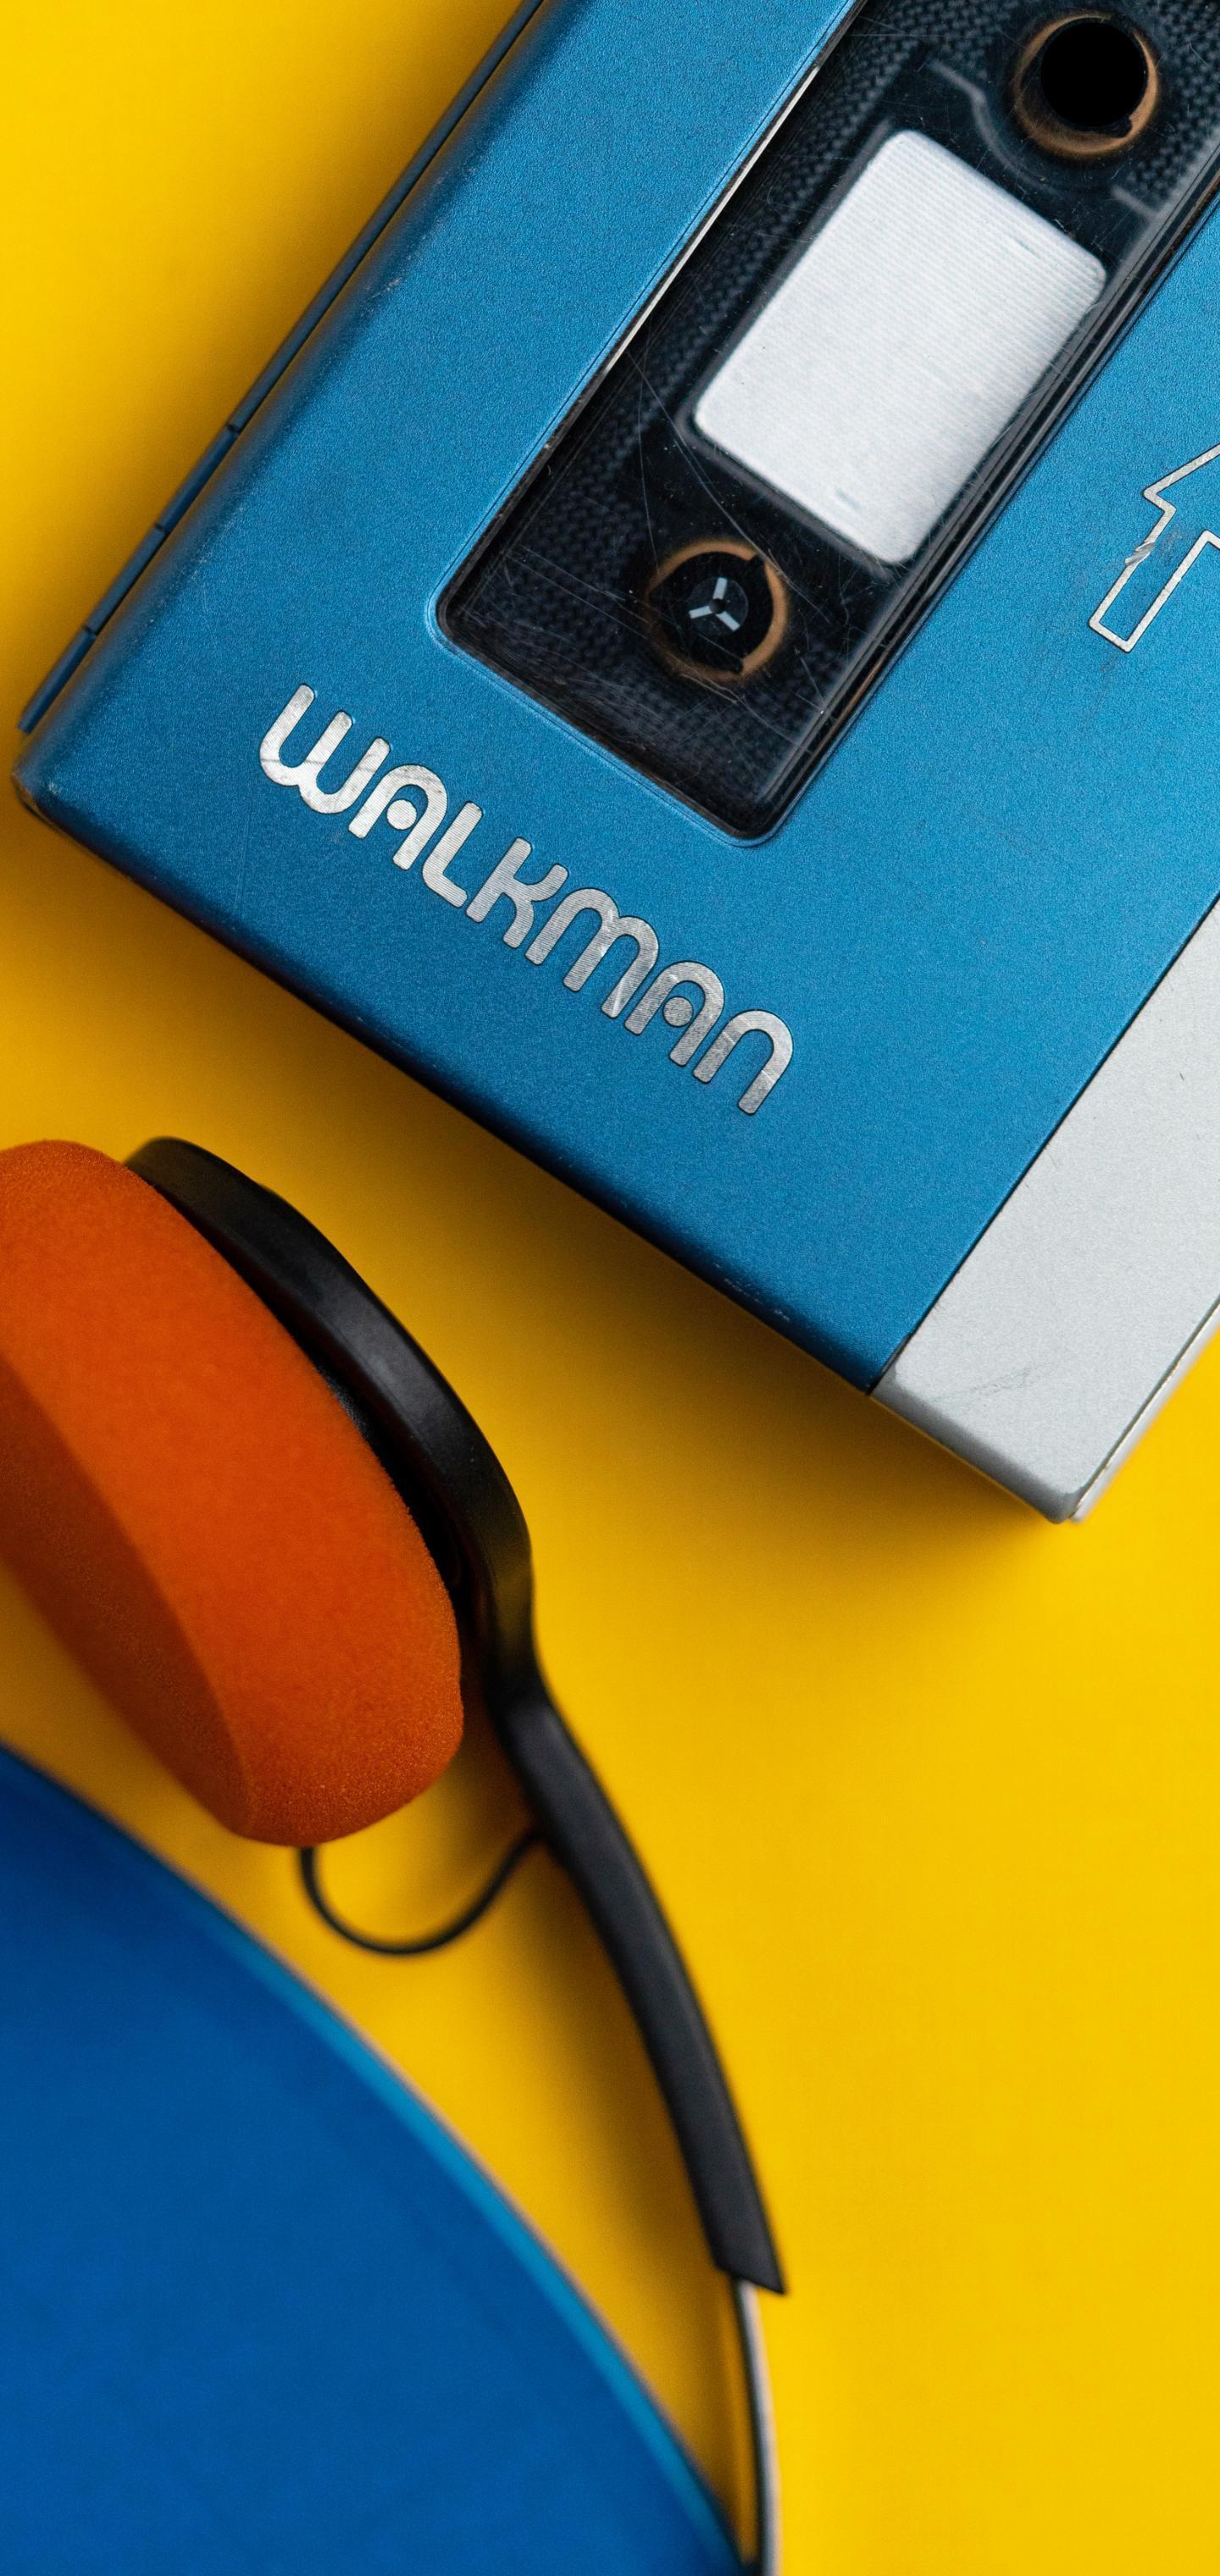 Sony Walkman by Jonathan Morrison. Galaxy S10 Wallpaper